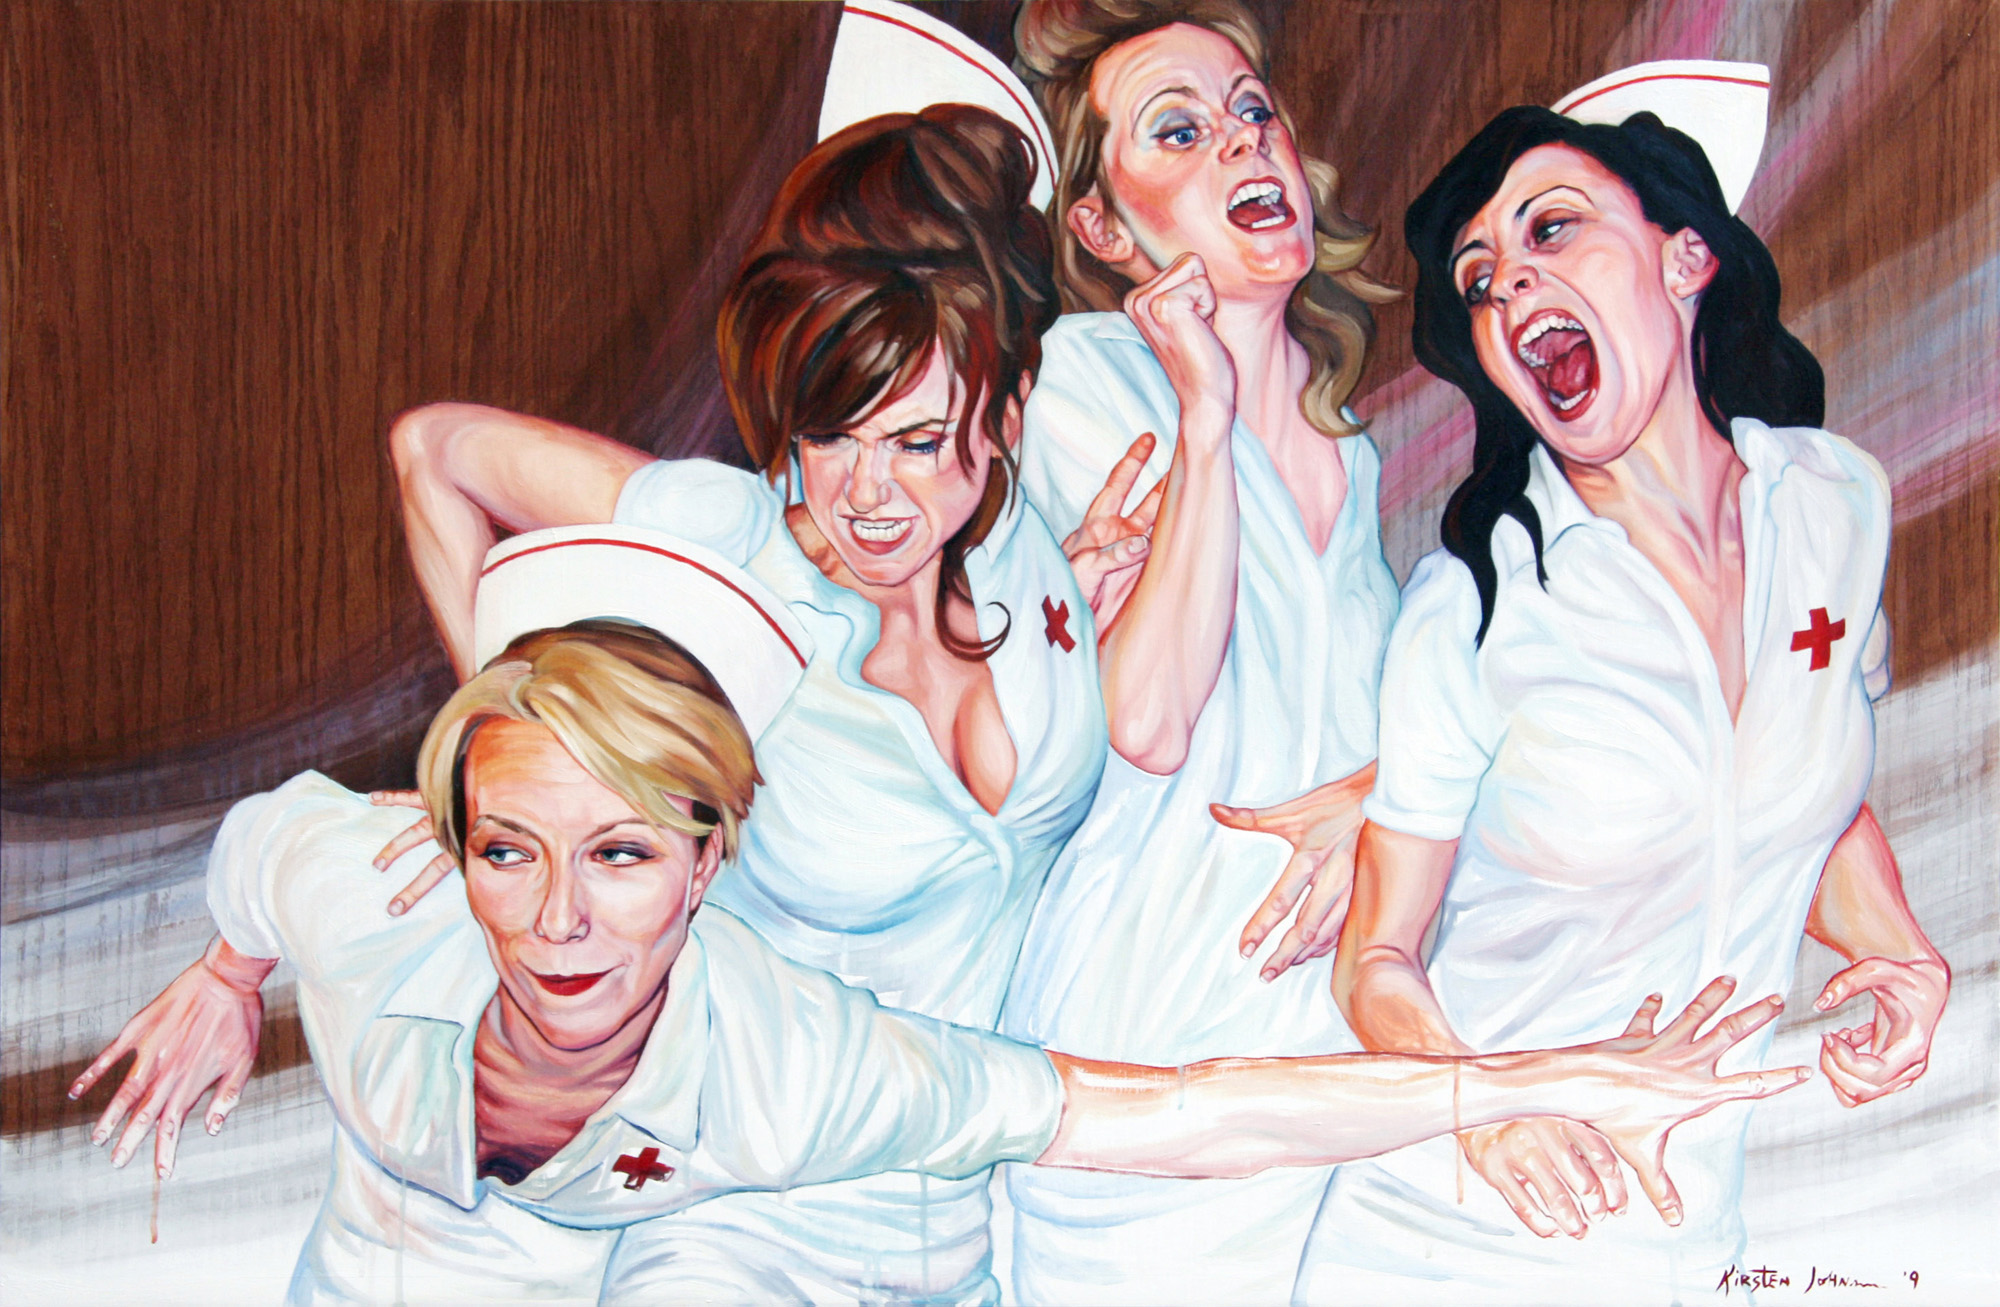 Lustful laughing nurse